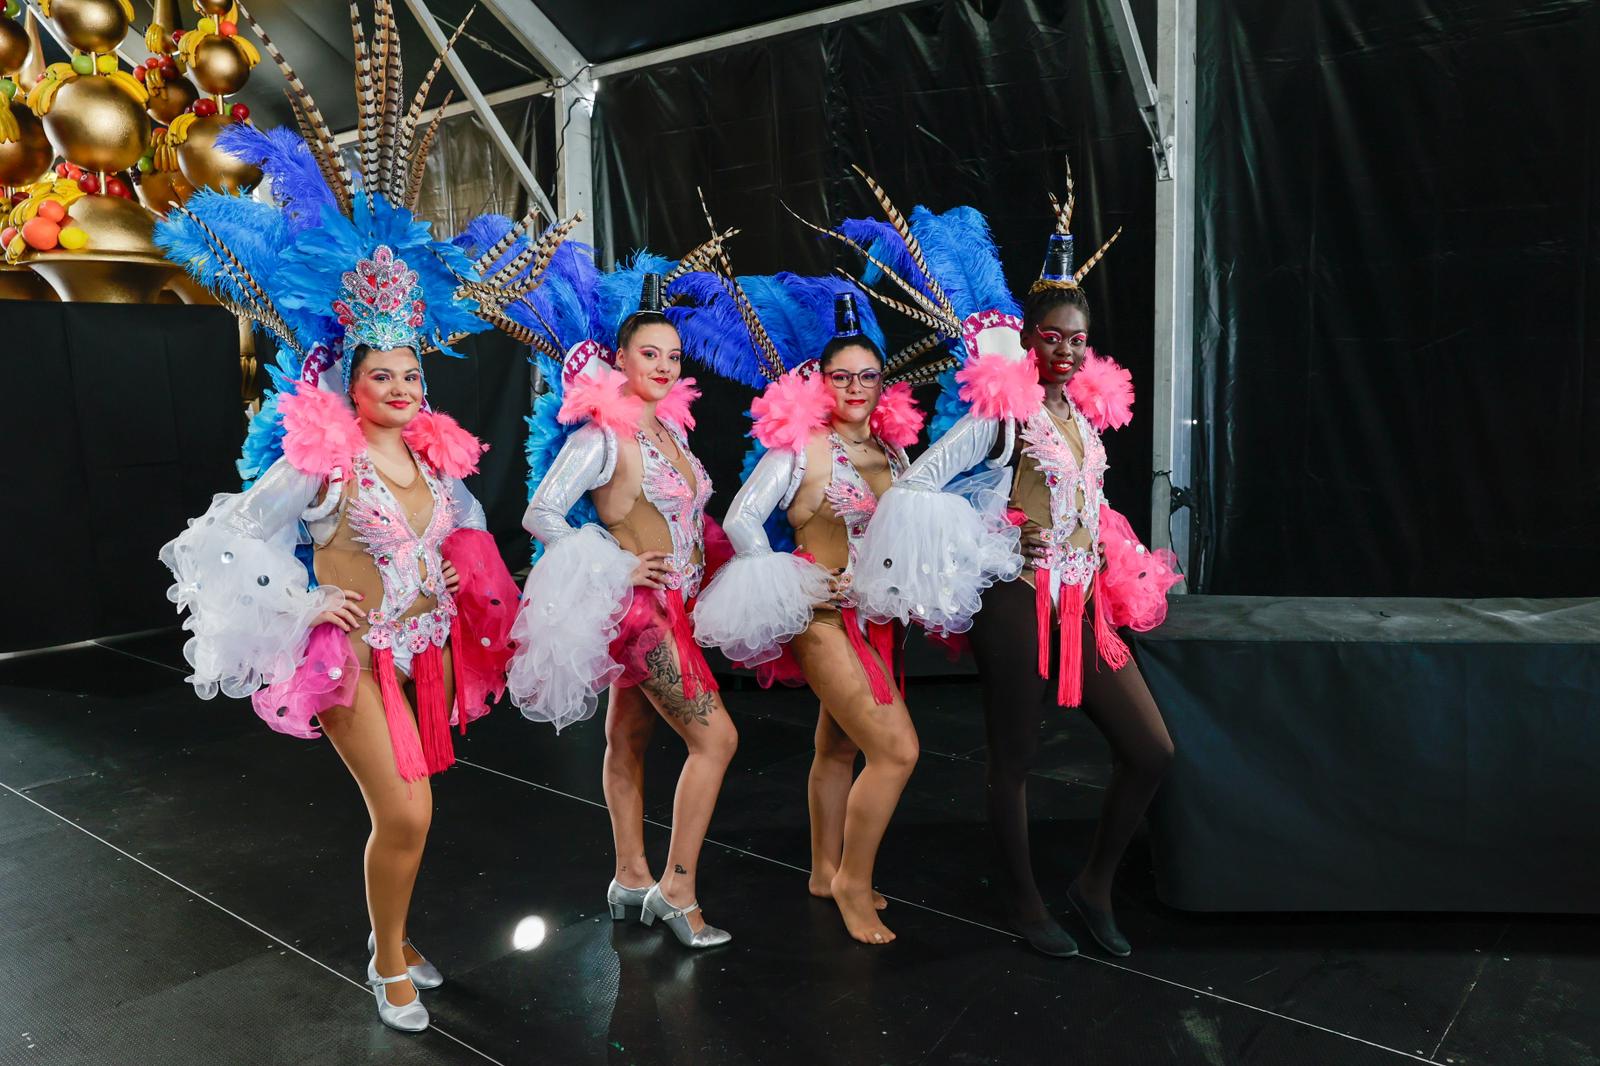 La cantera del carnaval de Las Palmas de Gran Canaria toma el escenario